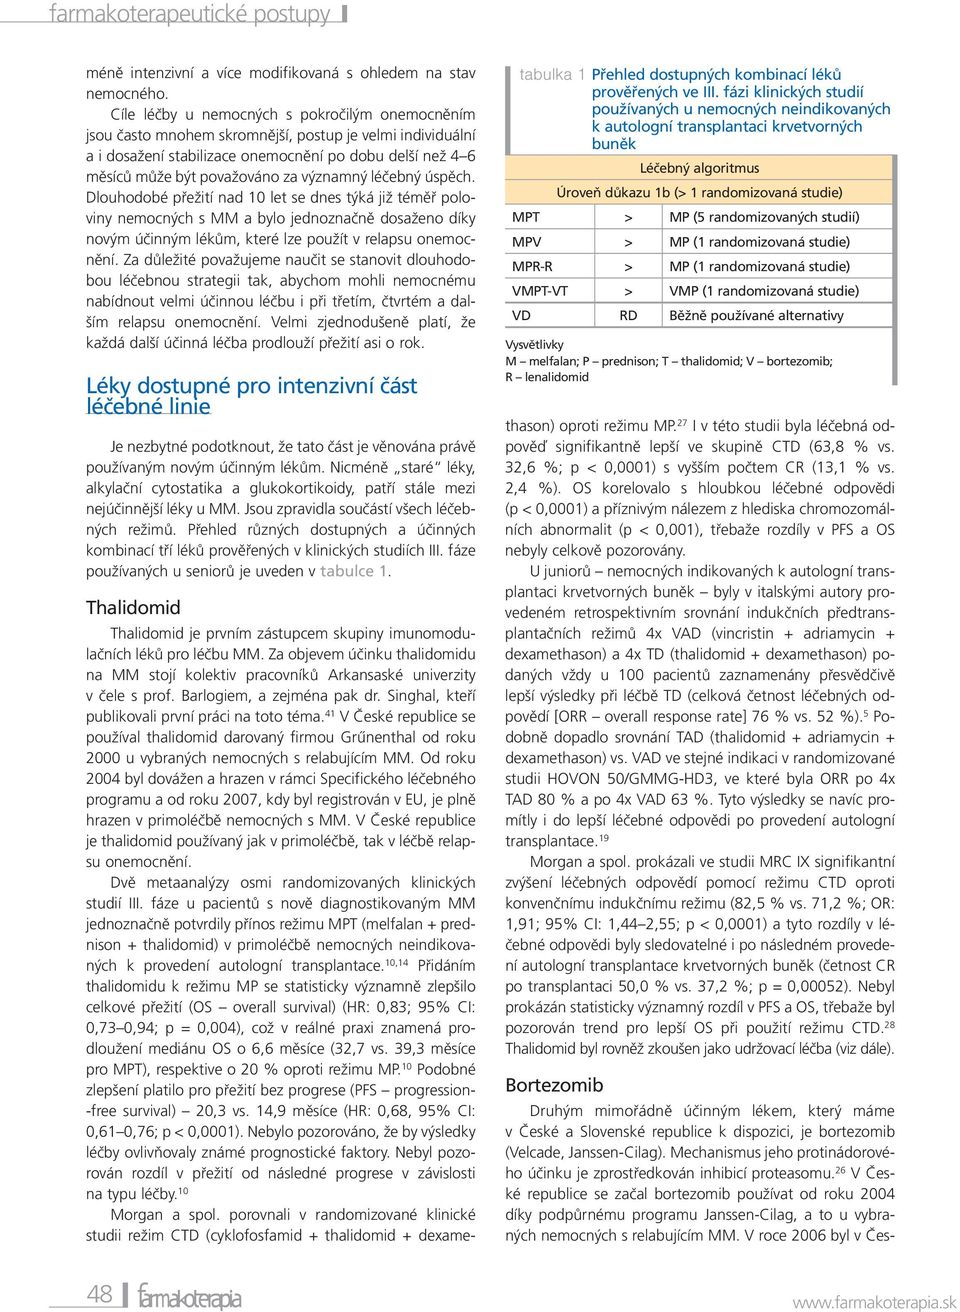 26 V České republice se začal bortezomib používat od roku 2004 díky podpůrnému programu Janssen-Cilag, a to u vybraných nemocných s relabujícím MM.